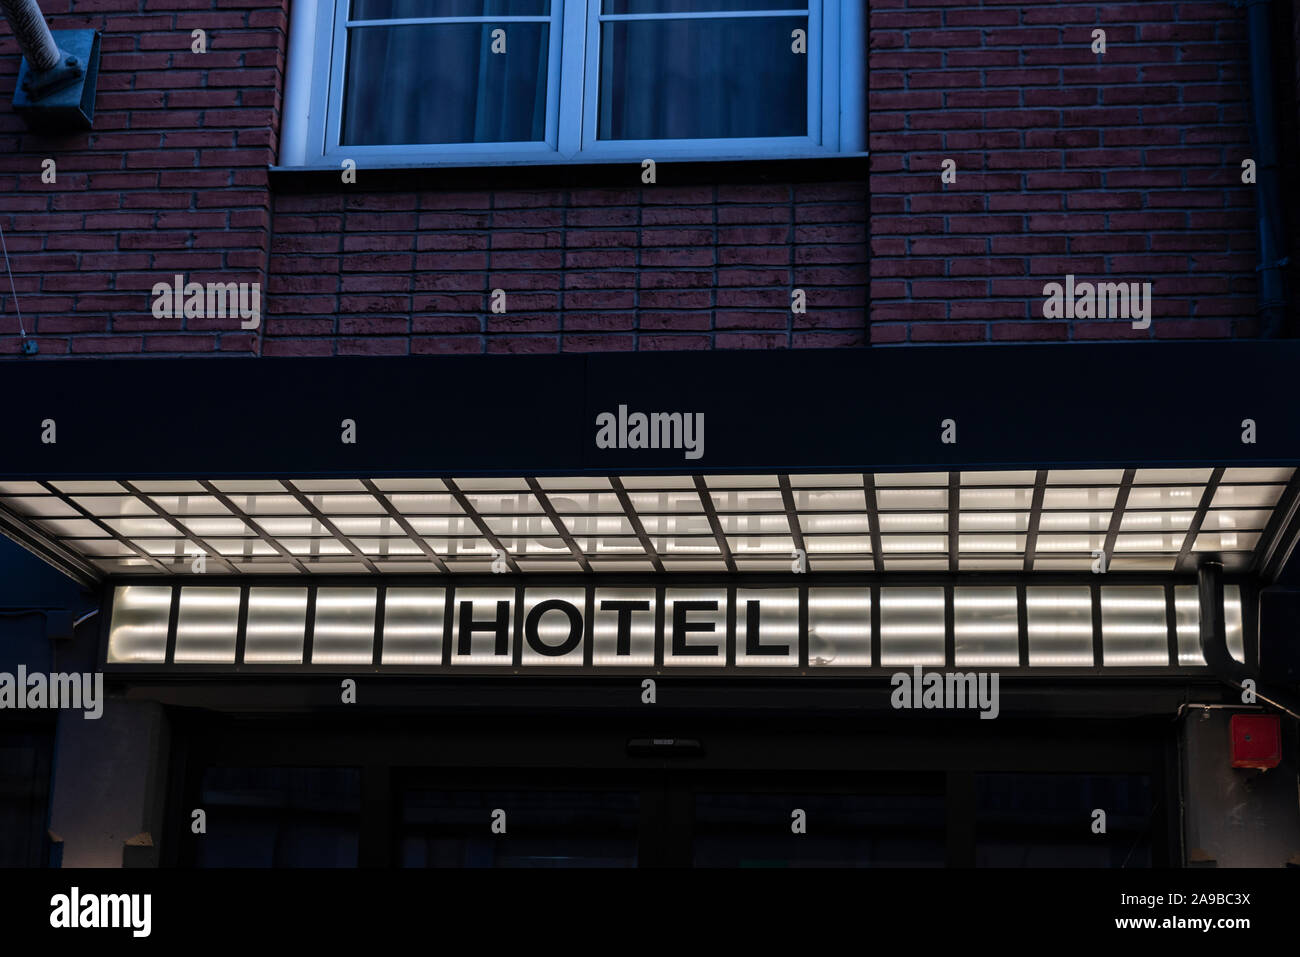 Hotel firmar iluminados durante la noche en un edificio en Malmo, Suecia Foto de stock